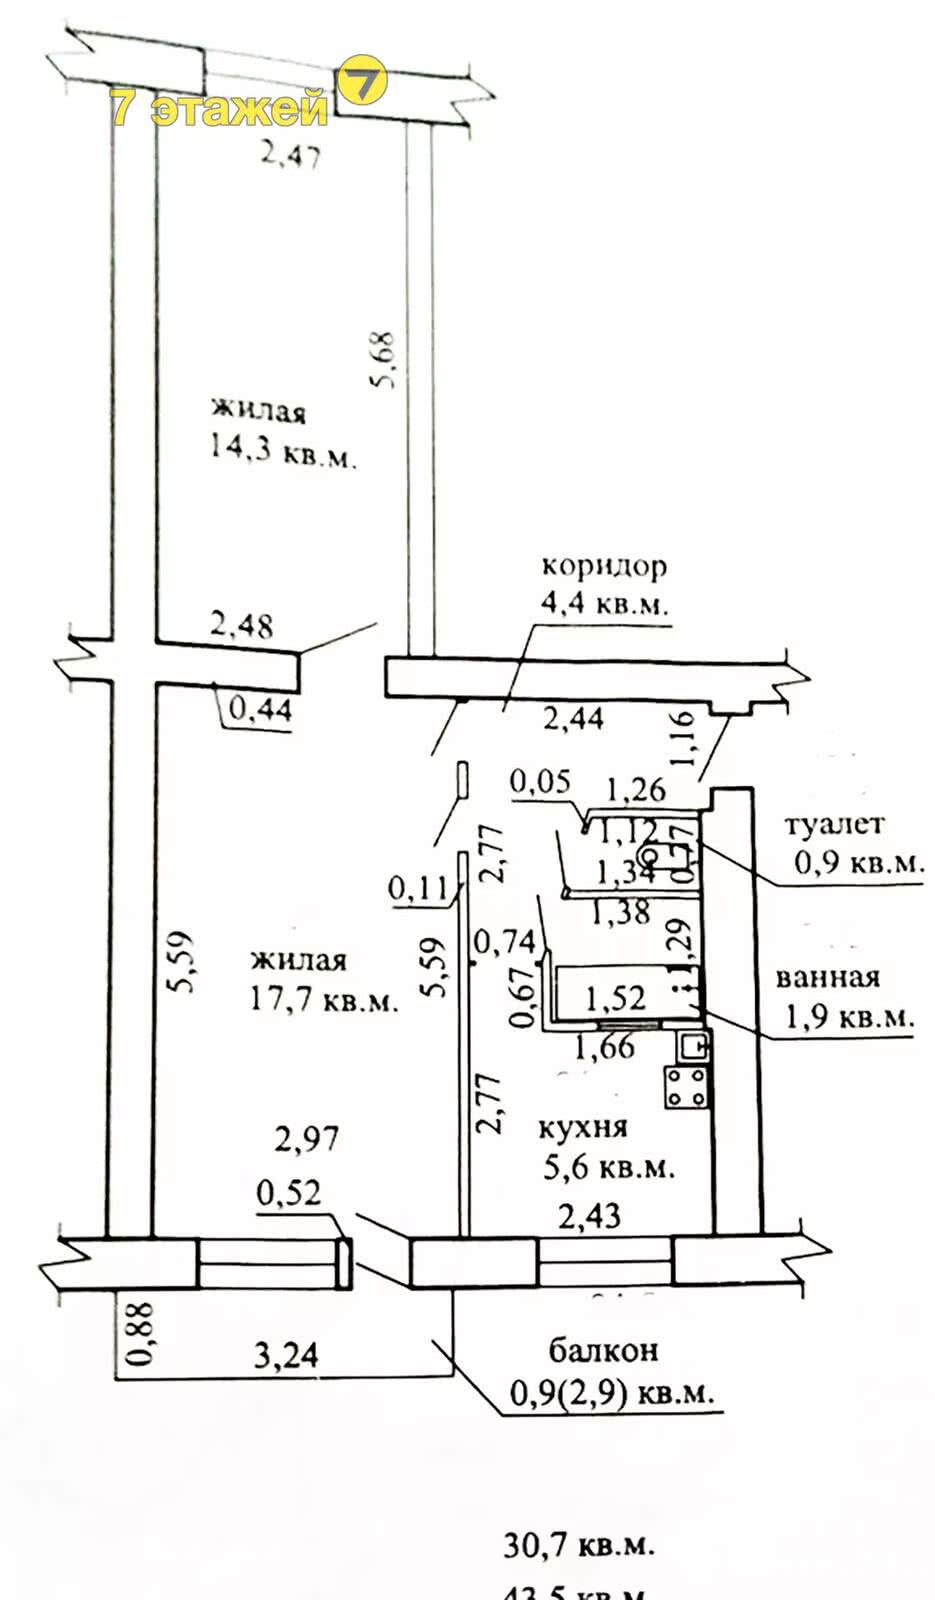 Цена продажи квартиры, Уречье, ул. Лесная, д. 114